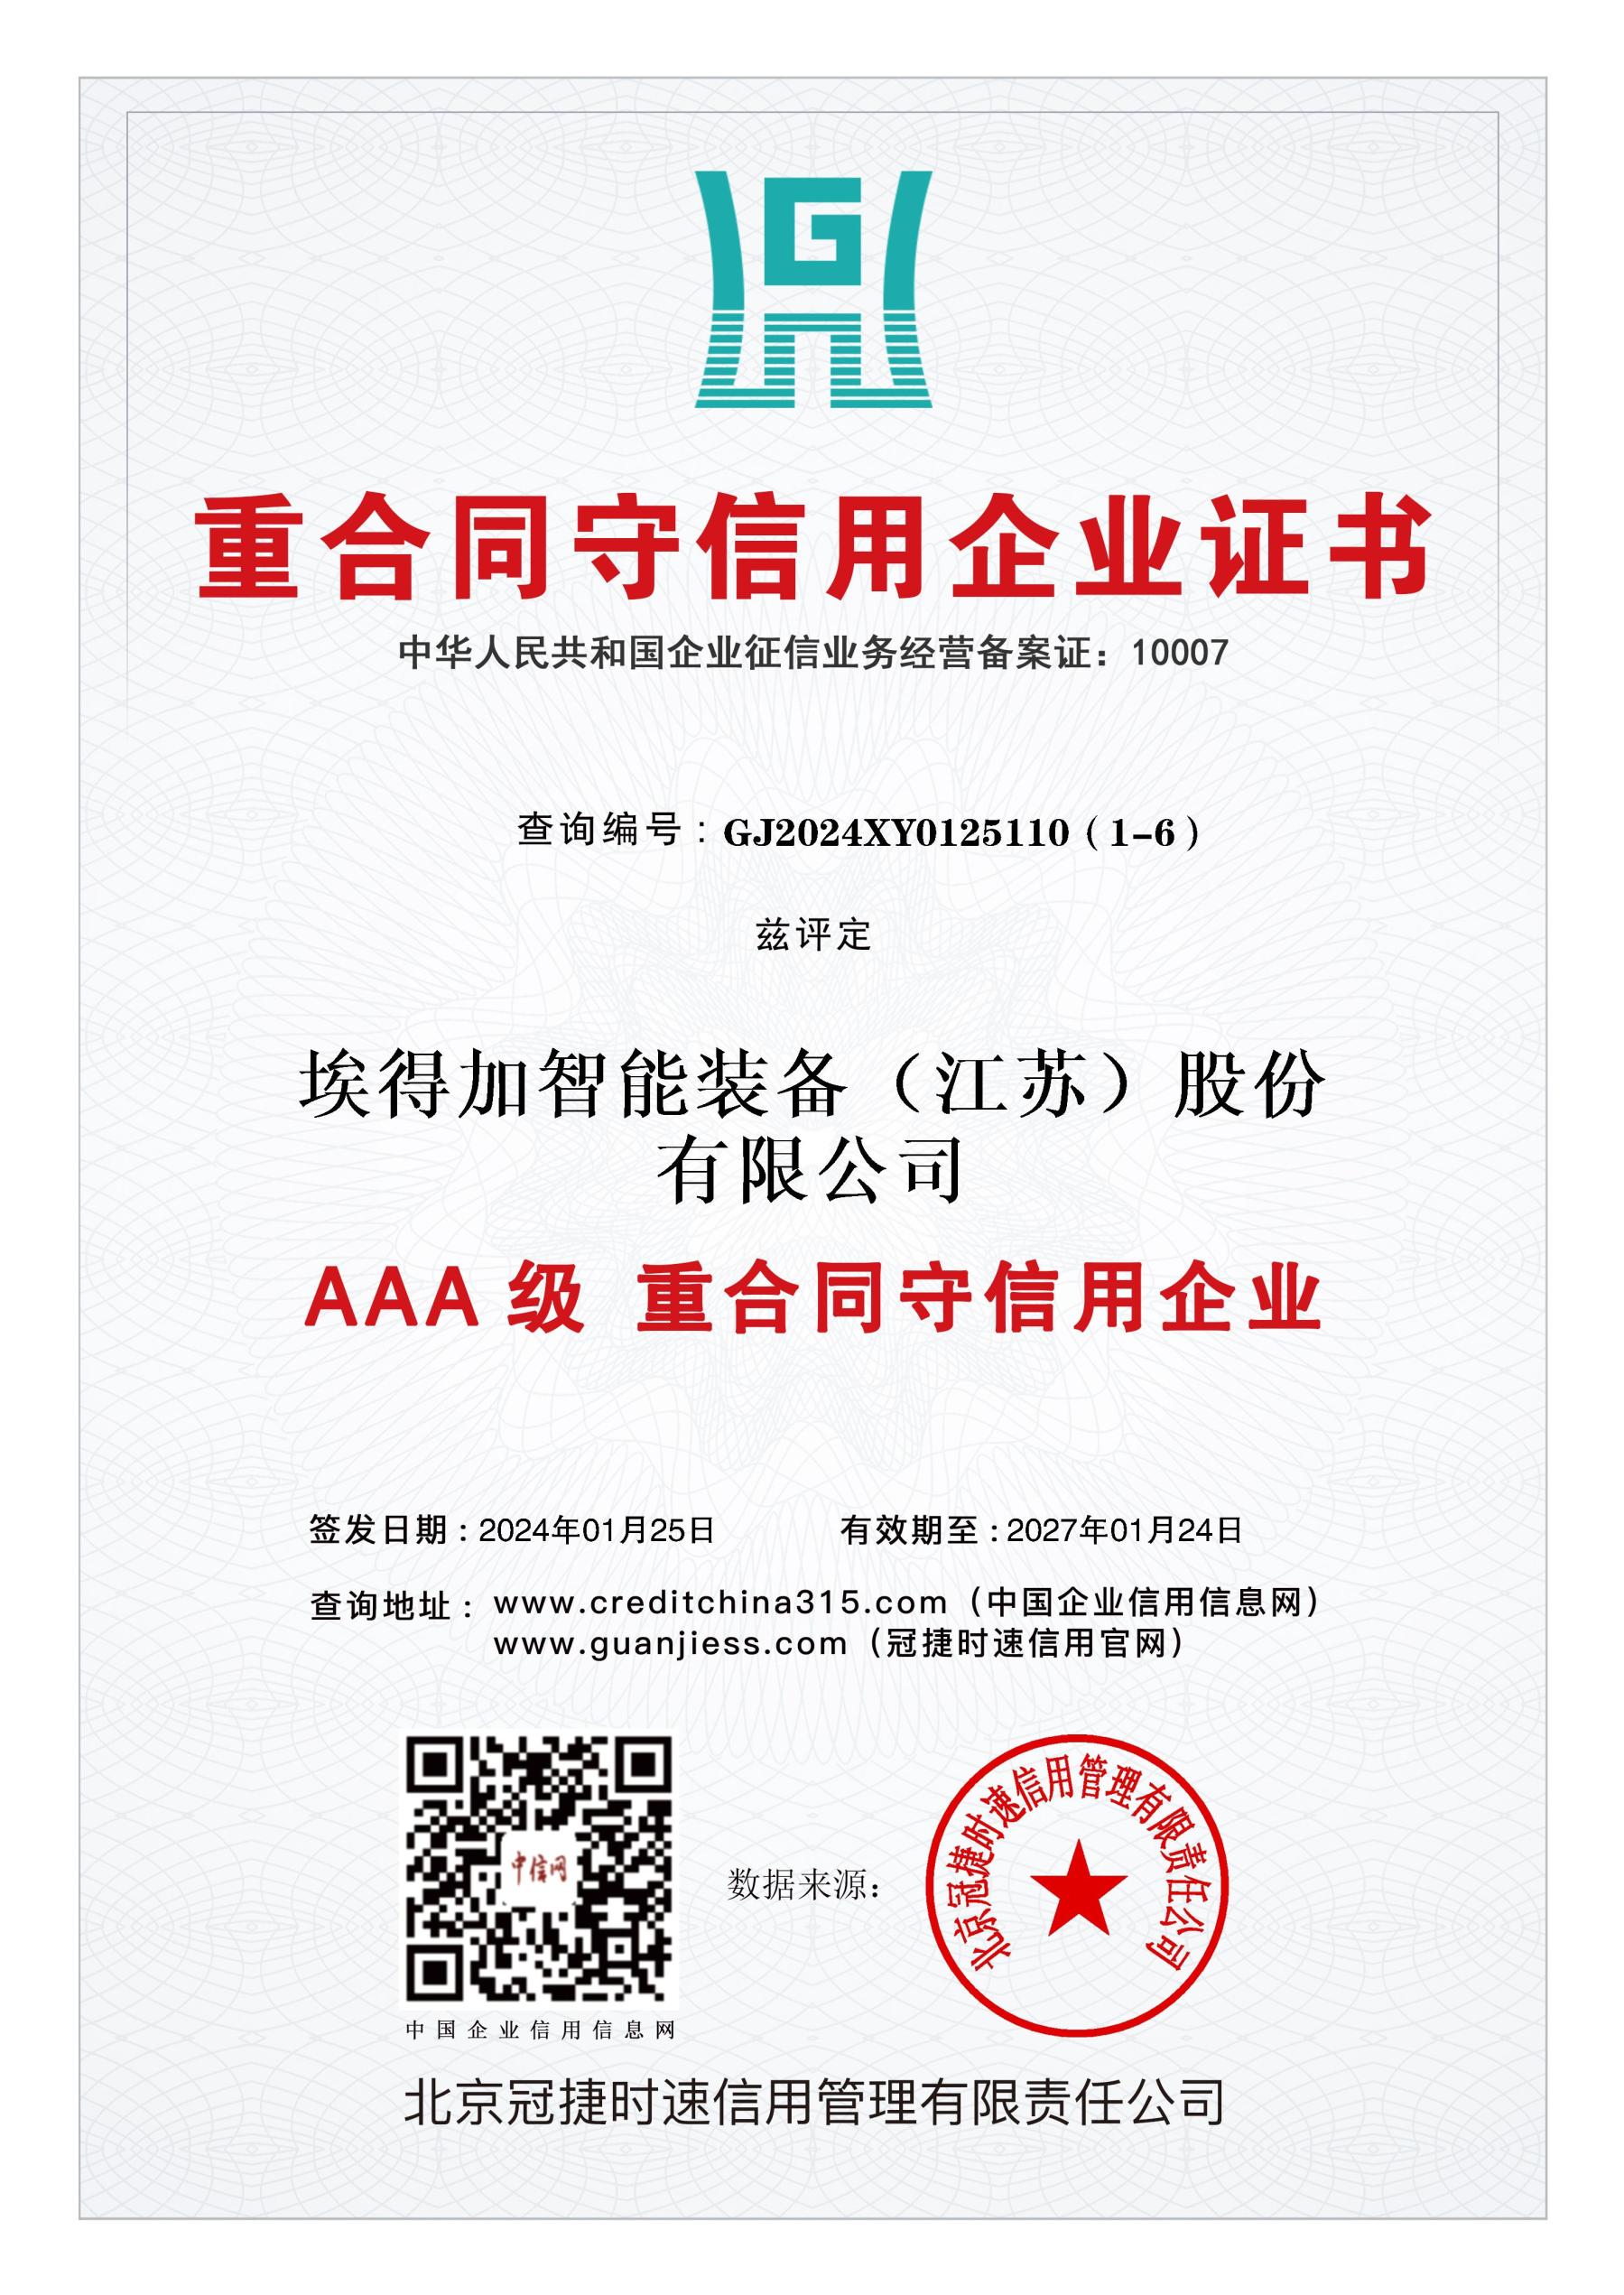 AAA重合同守信用企业证书